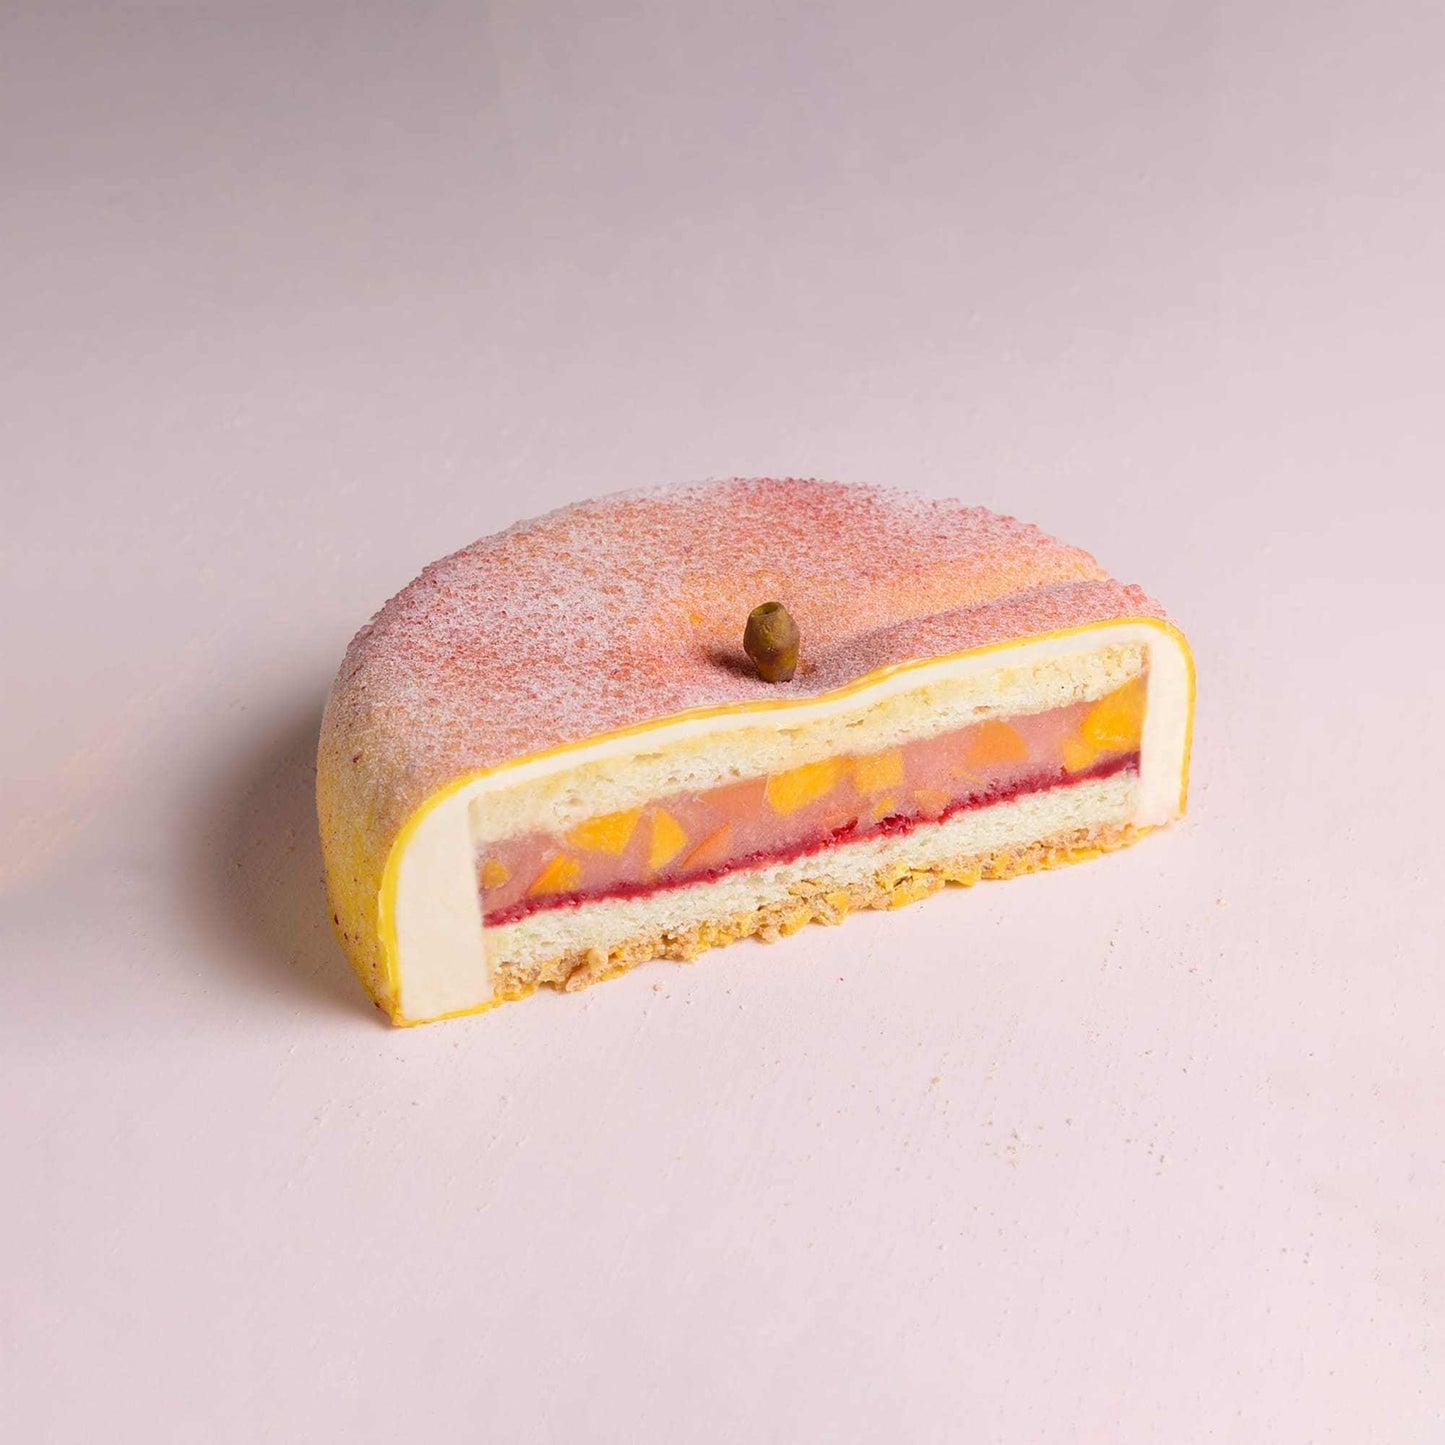 Peach Cake